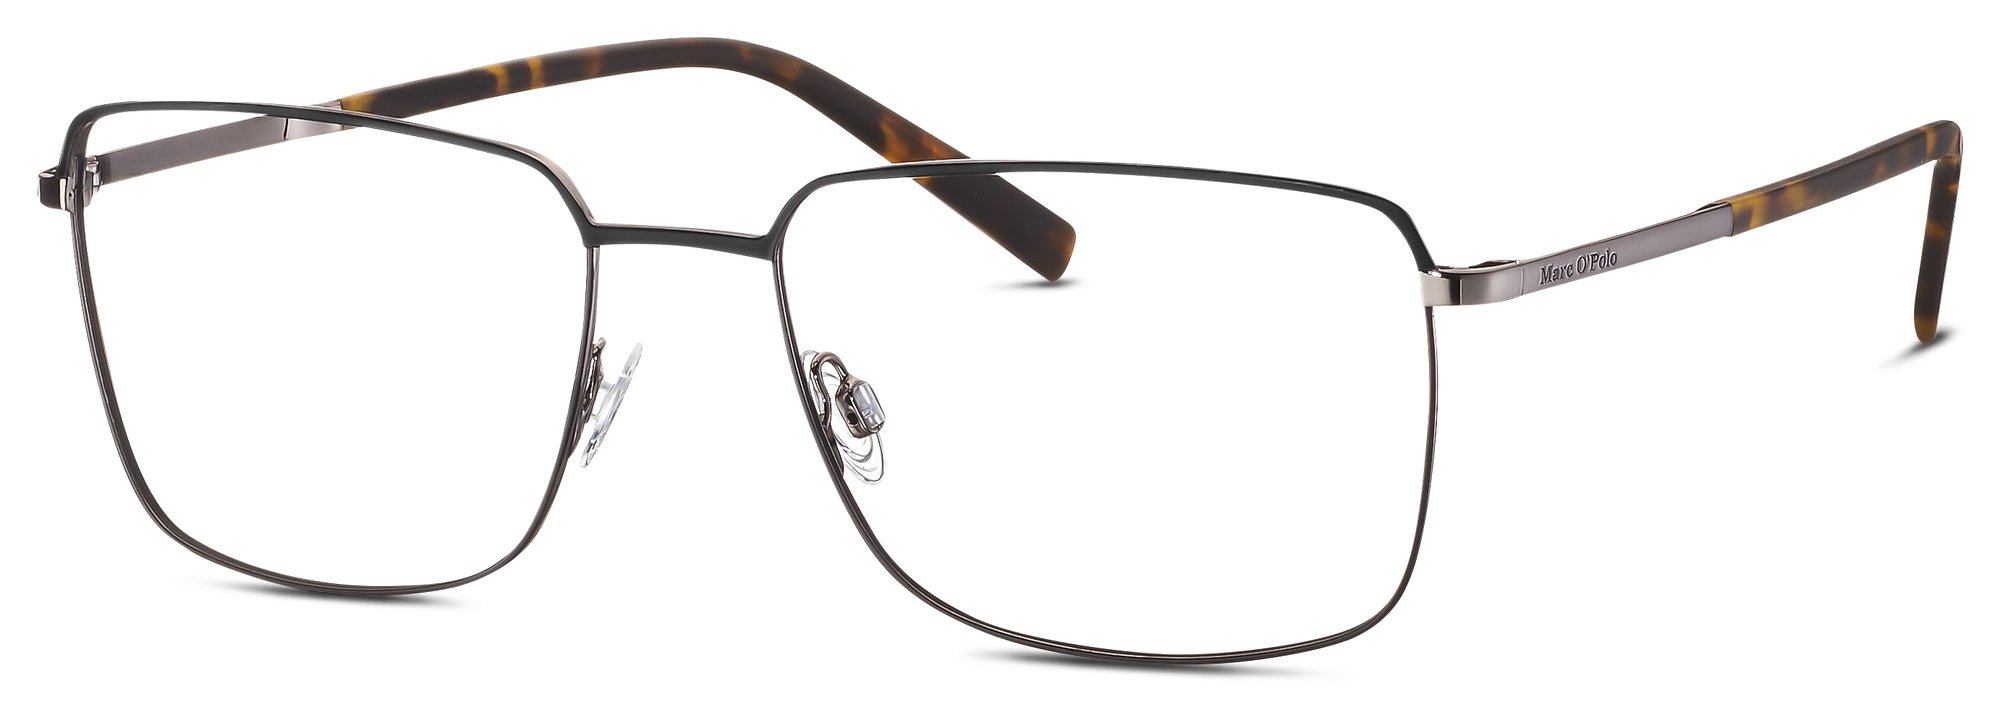 Das Bild zeigt die Korrektionsbrille 502167 10 von der Marke Marc O‘Polo in grau/silber.